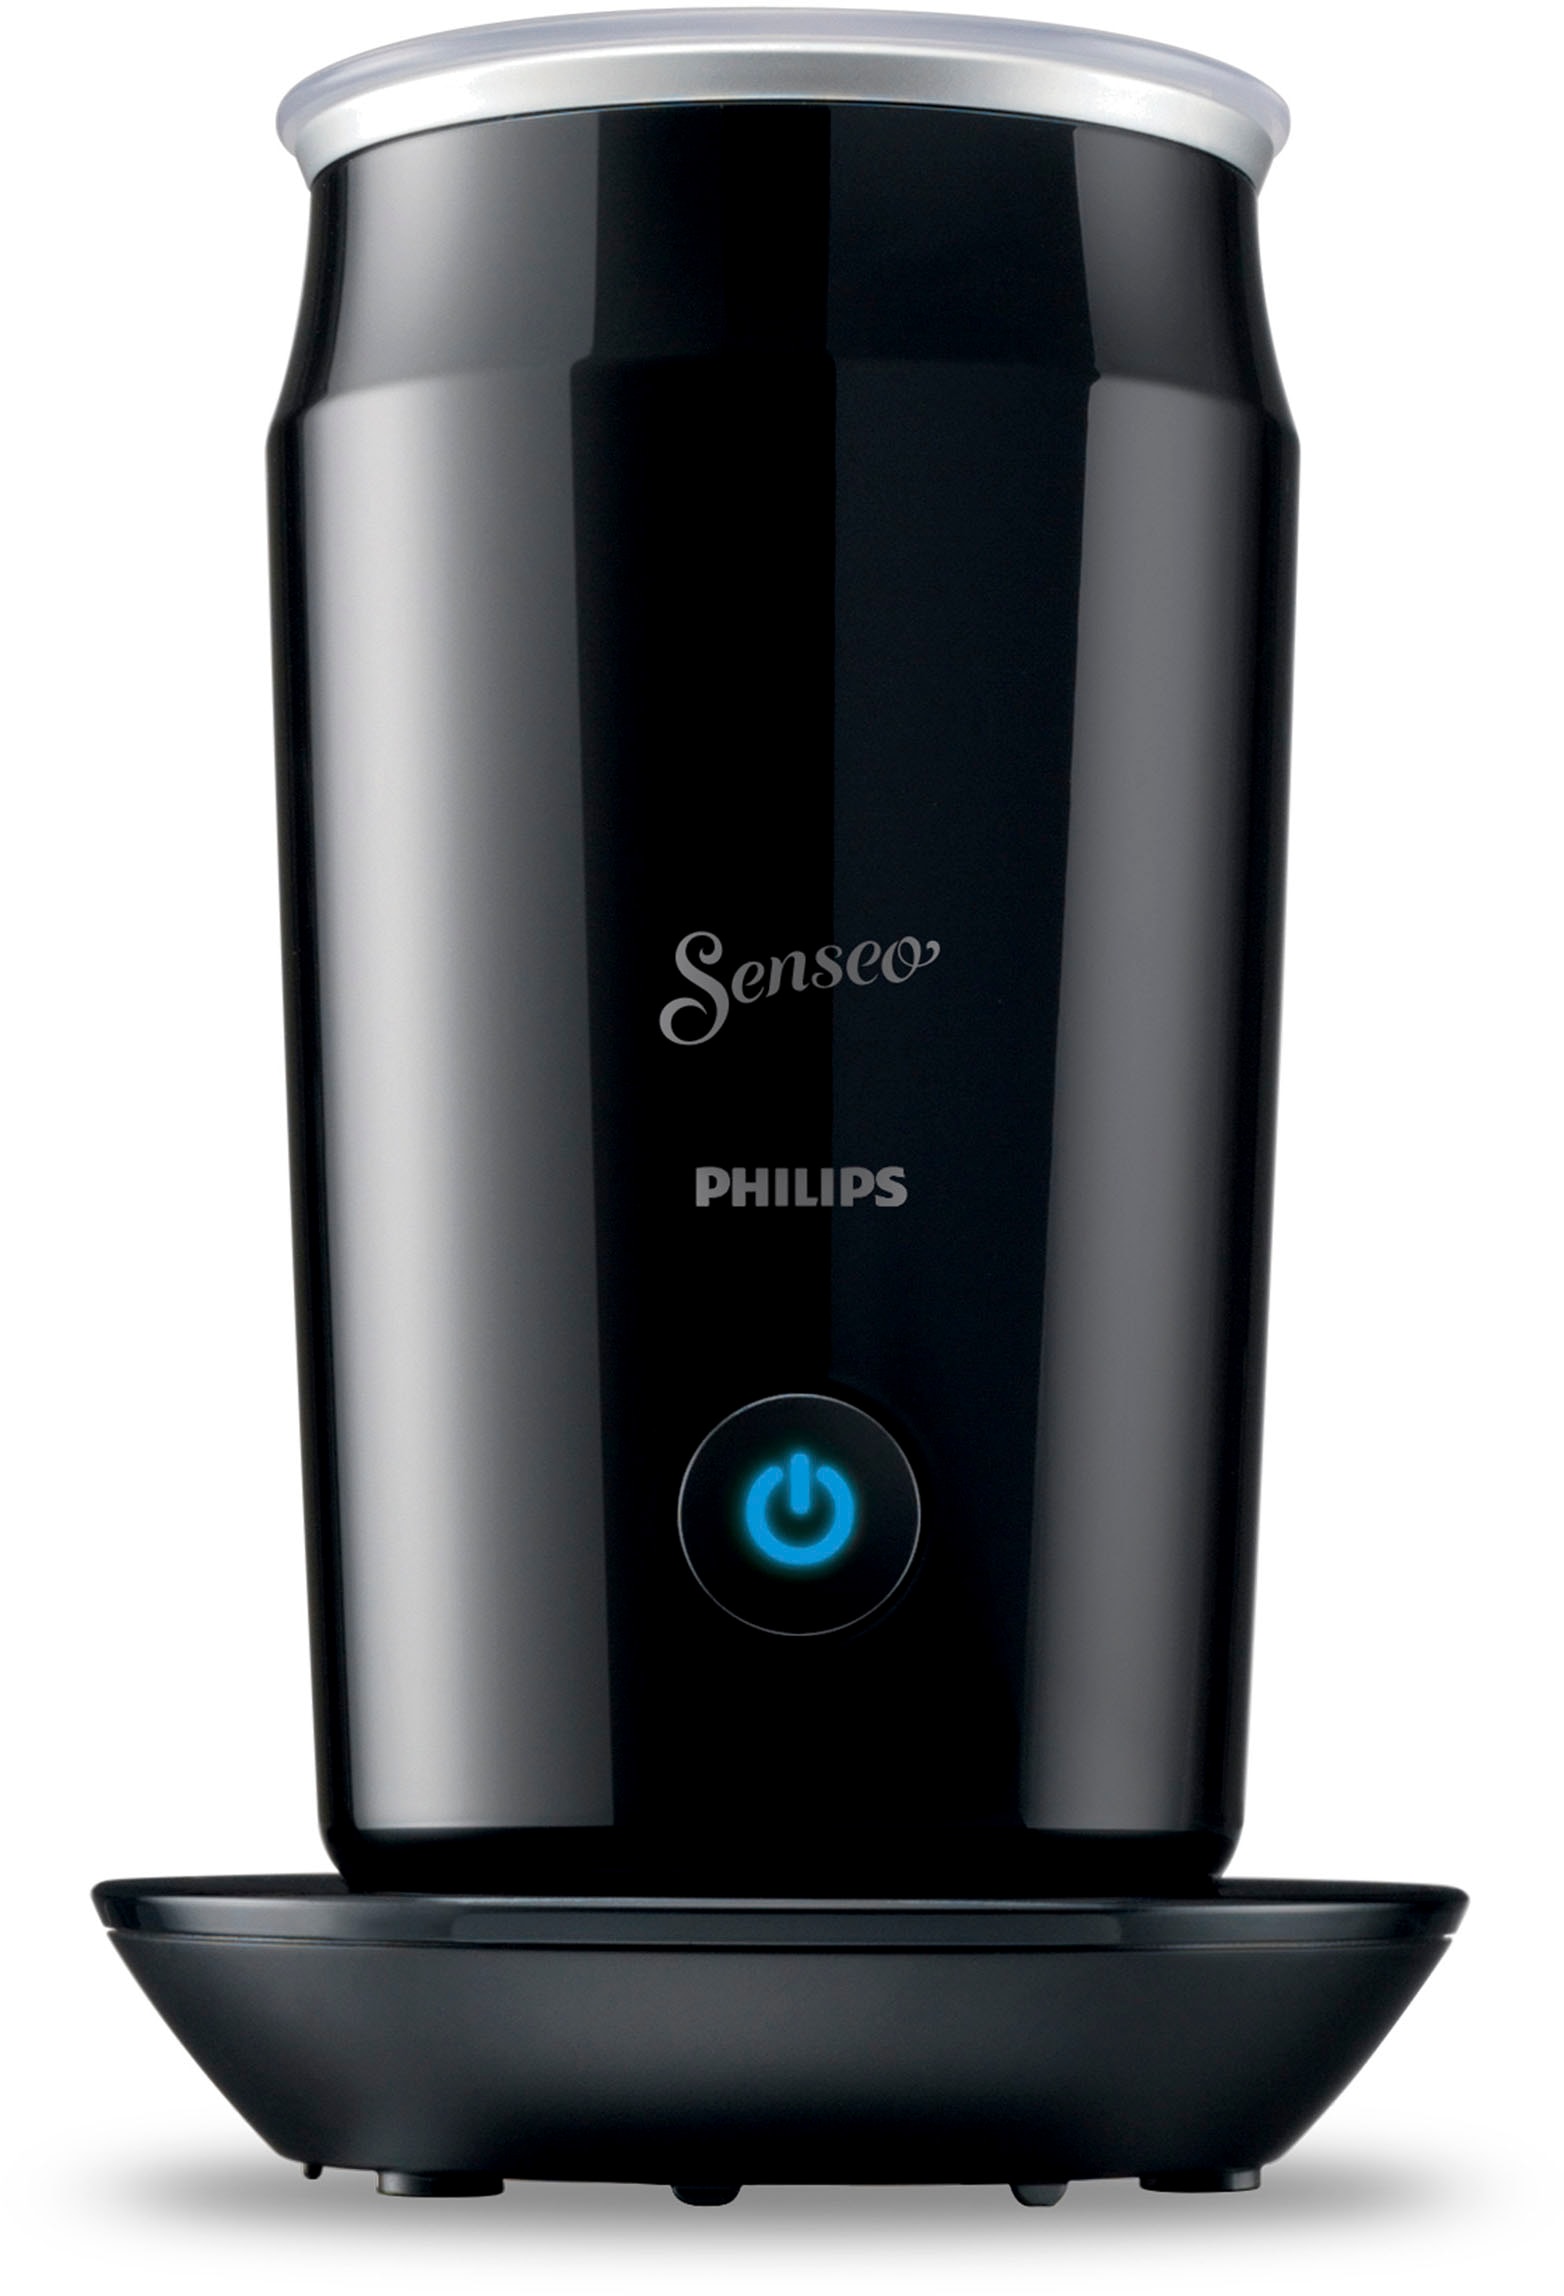 Philips Senseo Kaffeepadmaschine von im »Original UVP € 79,99 bei HD6553/65«, Wert online Milchaufschäumer jetzt OTTO inkl